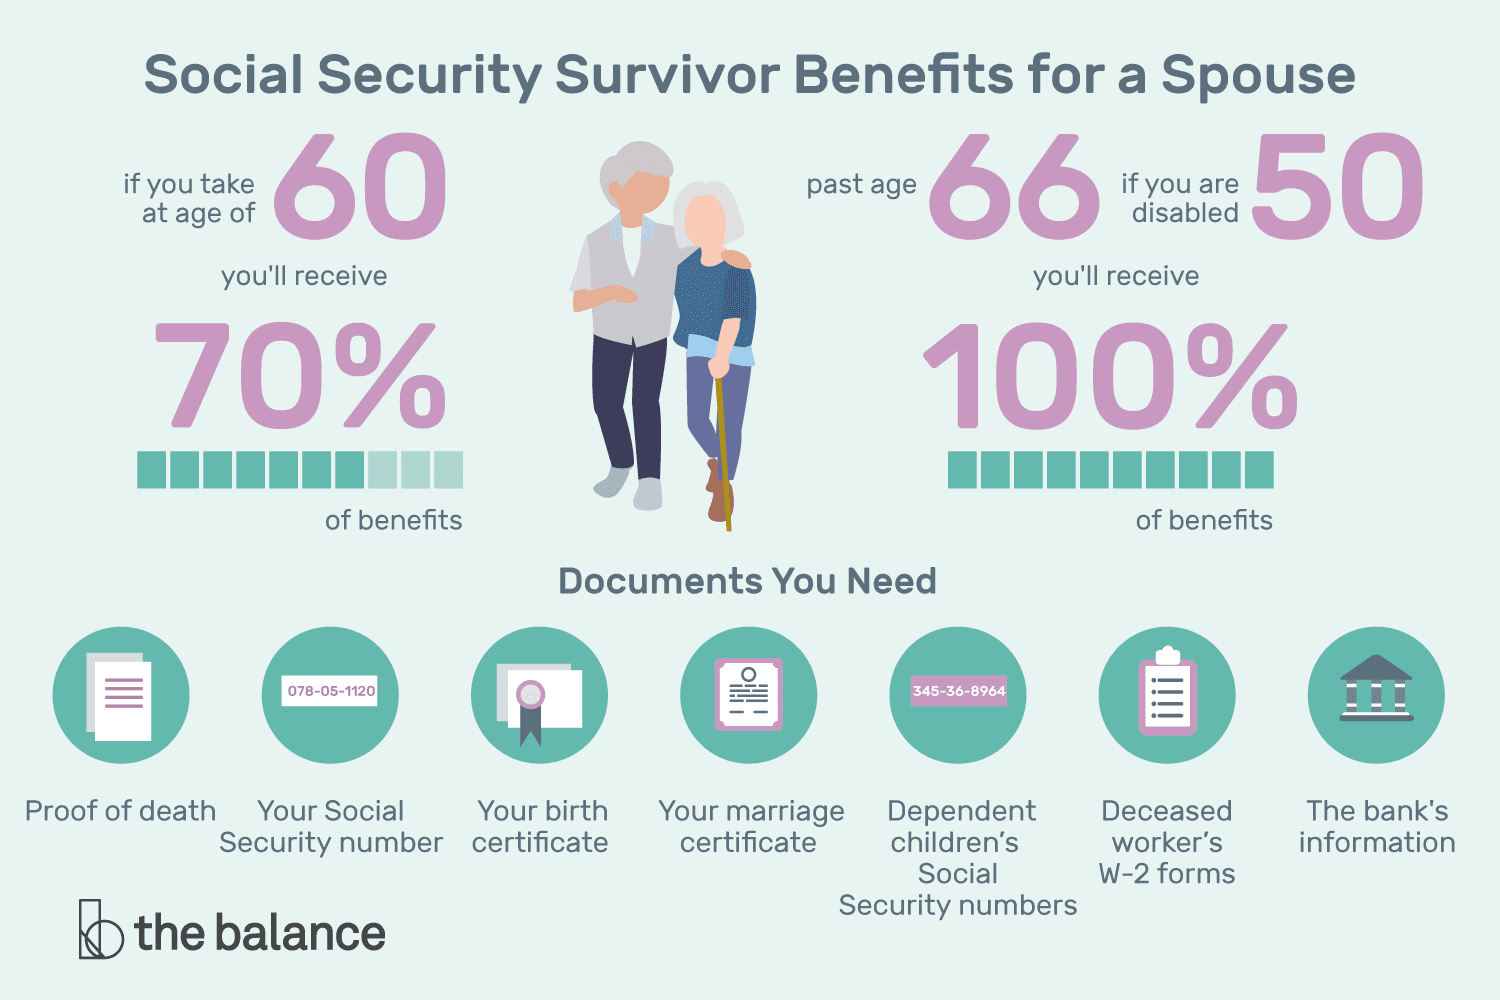 Social Security Survivor Benefits for a Spouse